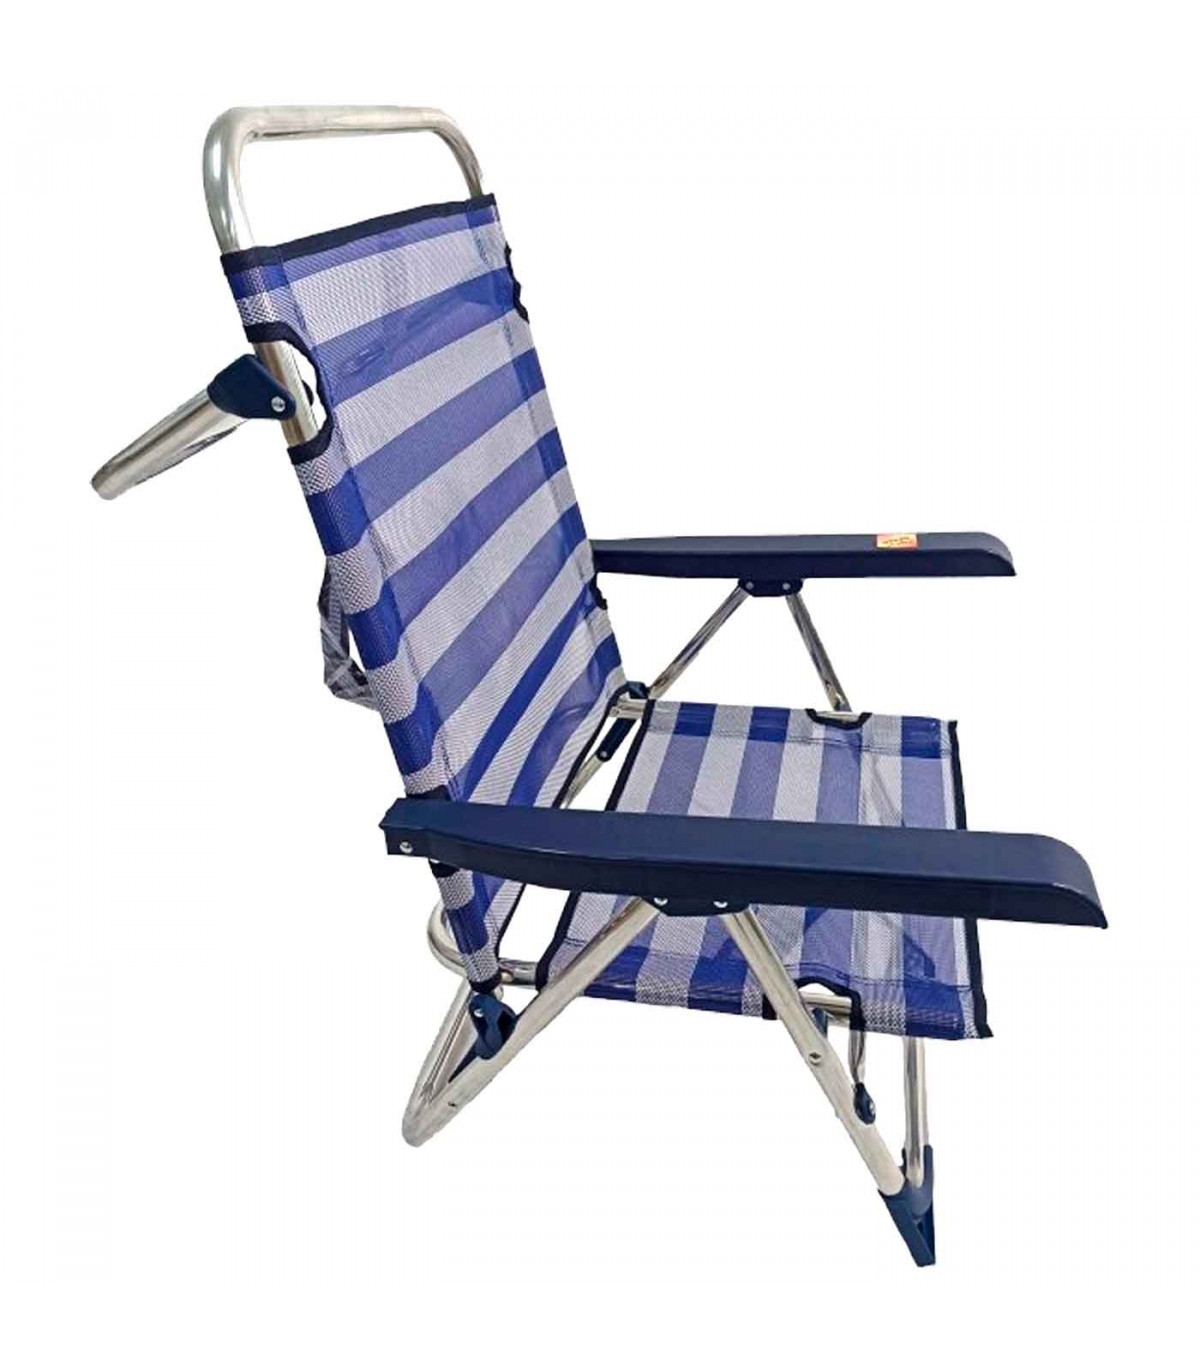 Tradineur - Esterilla de playa abatible, tumbona con respaldo reclinable,  incluye bolsillo y correa, plegable, portátil, ligera